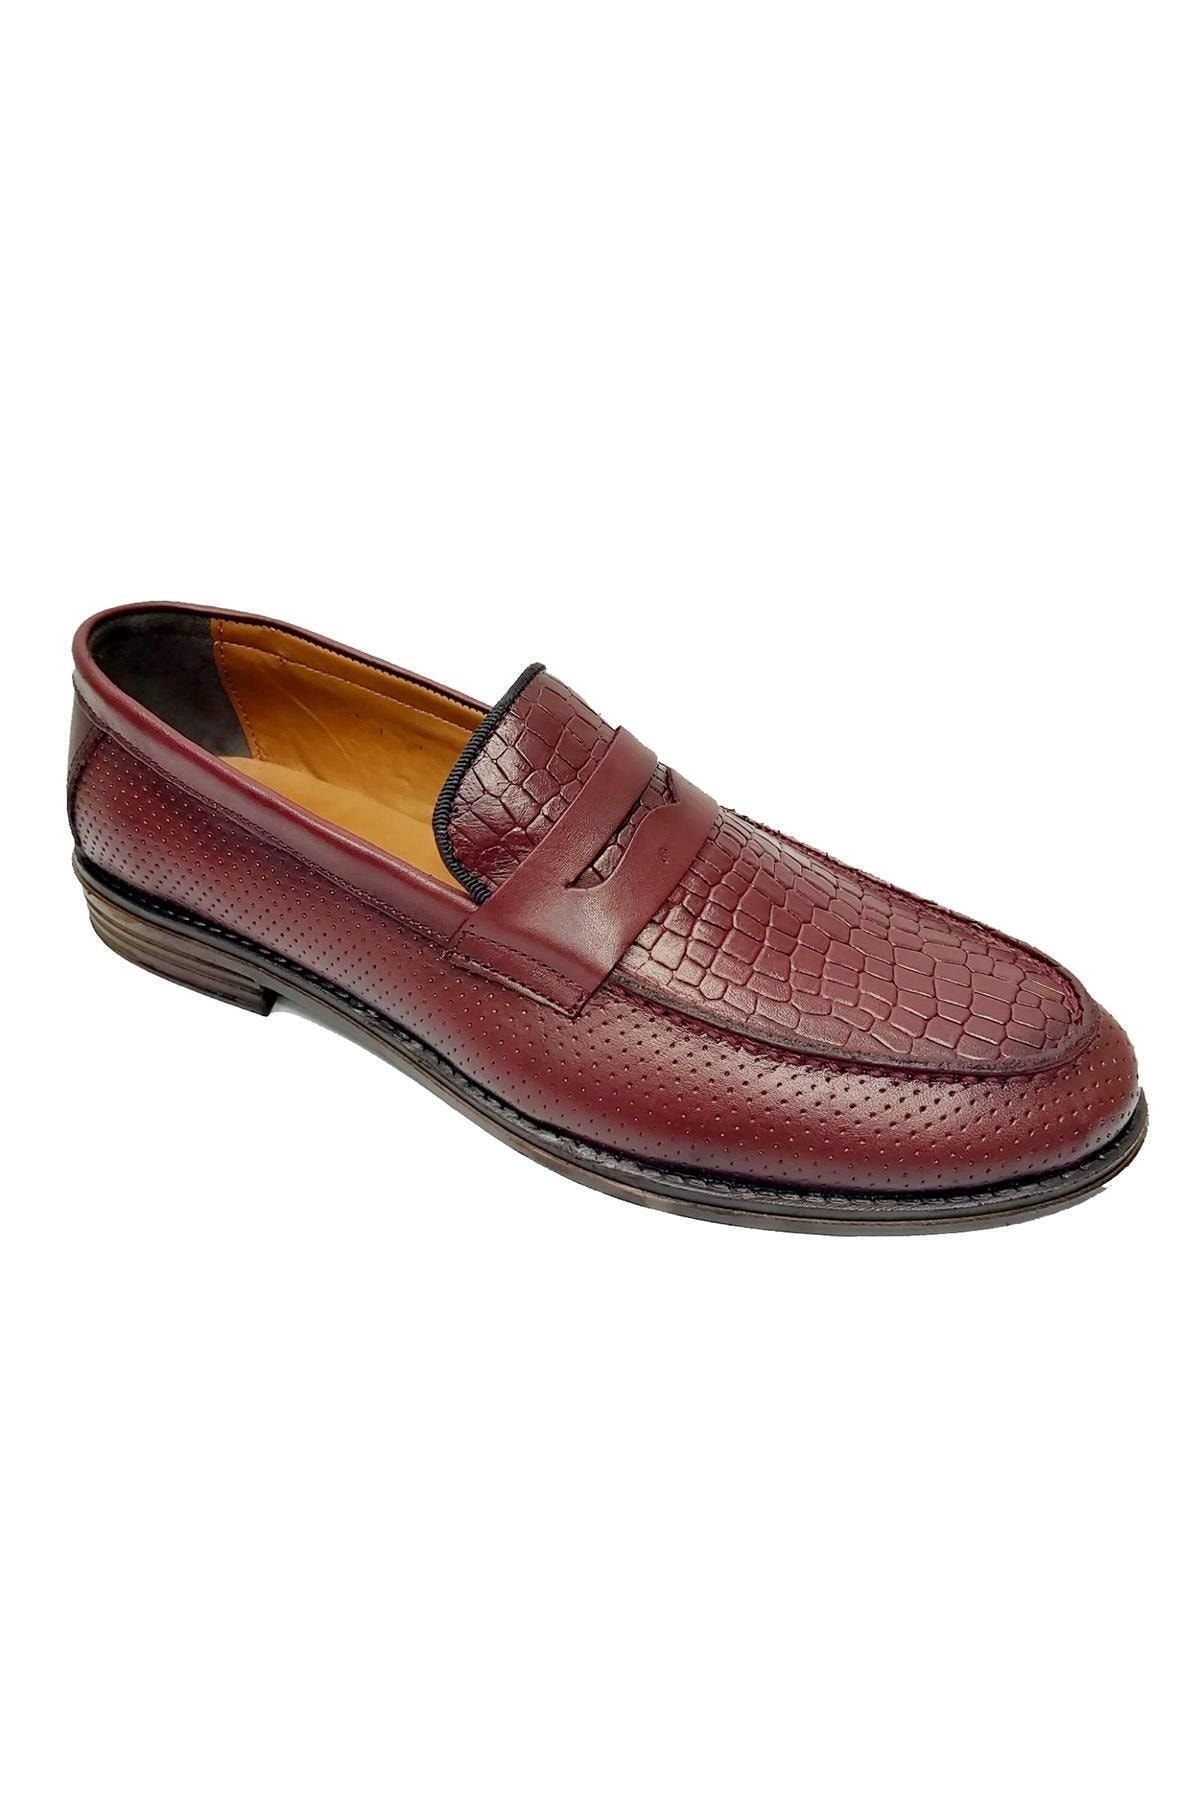 KİBPOLO 55153 Hakiki Deri Loafer Erkek Ayakkabı